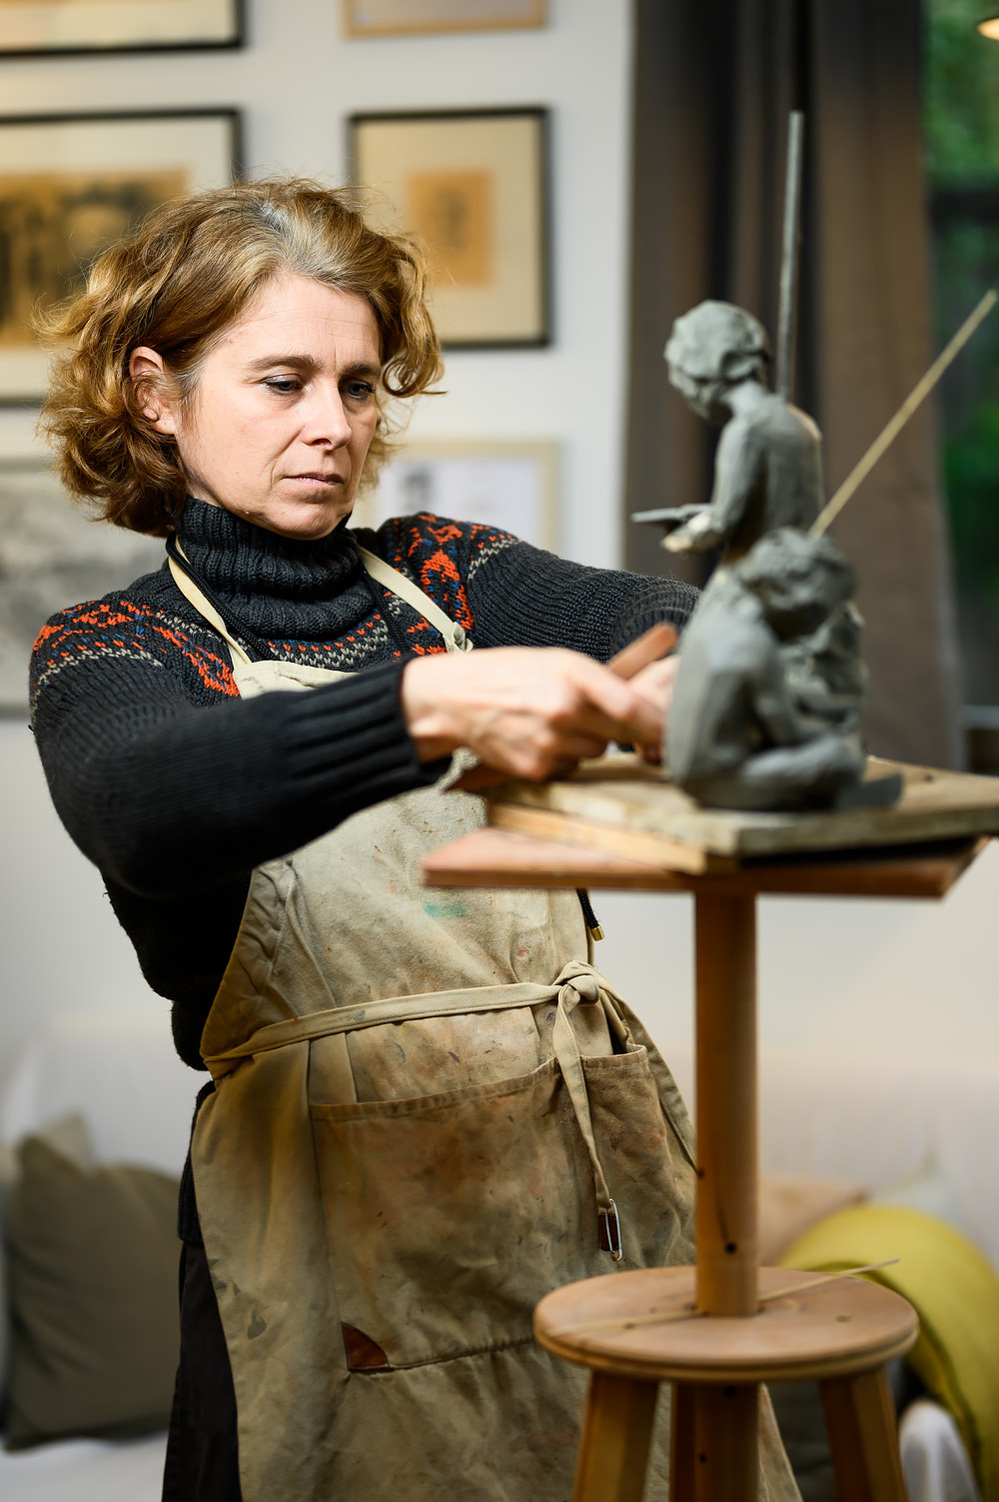 photographie portrait femme  artiste en train de réaliser une sculpture   lyon  lotfi dakhli